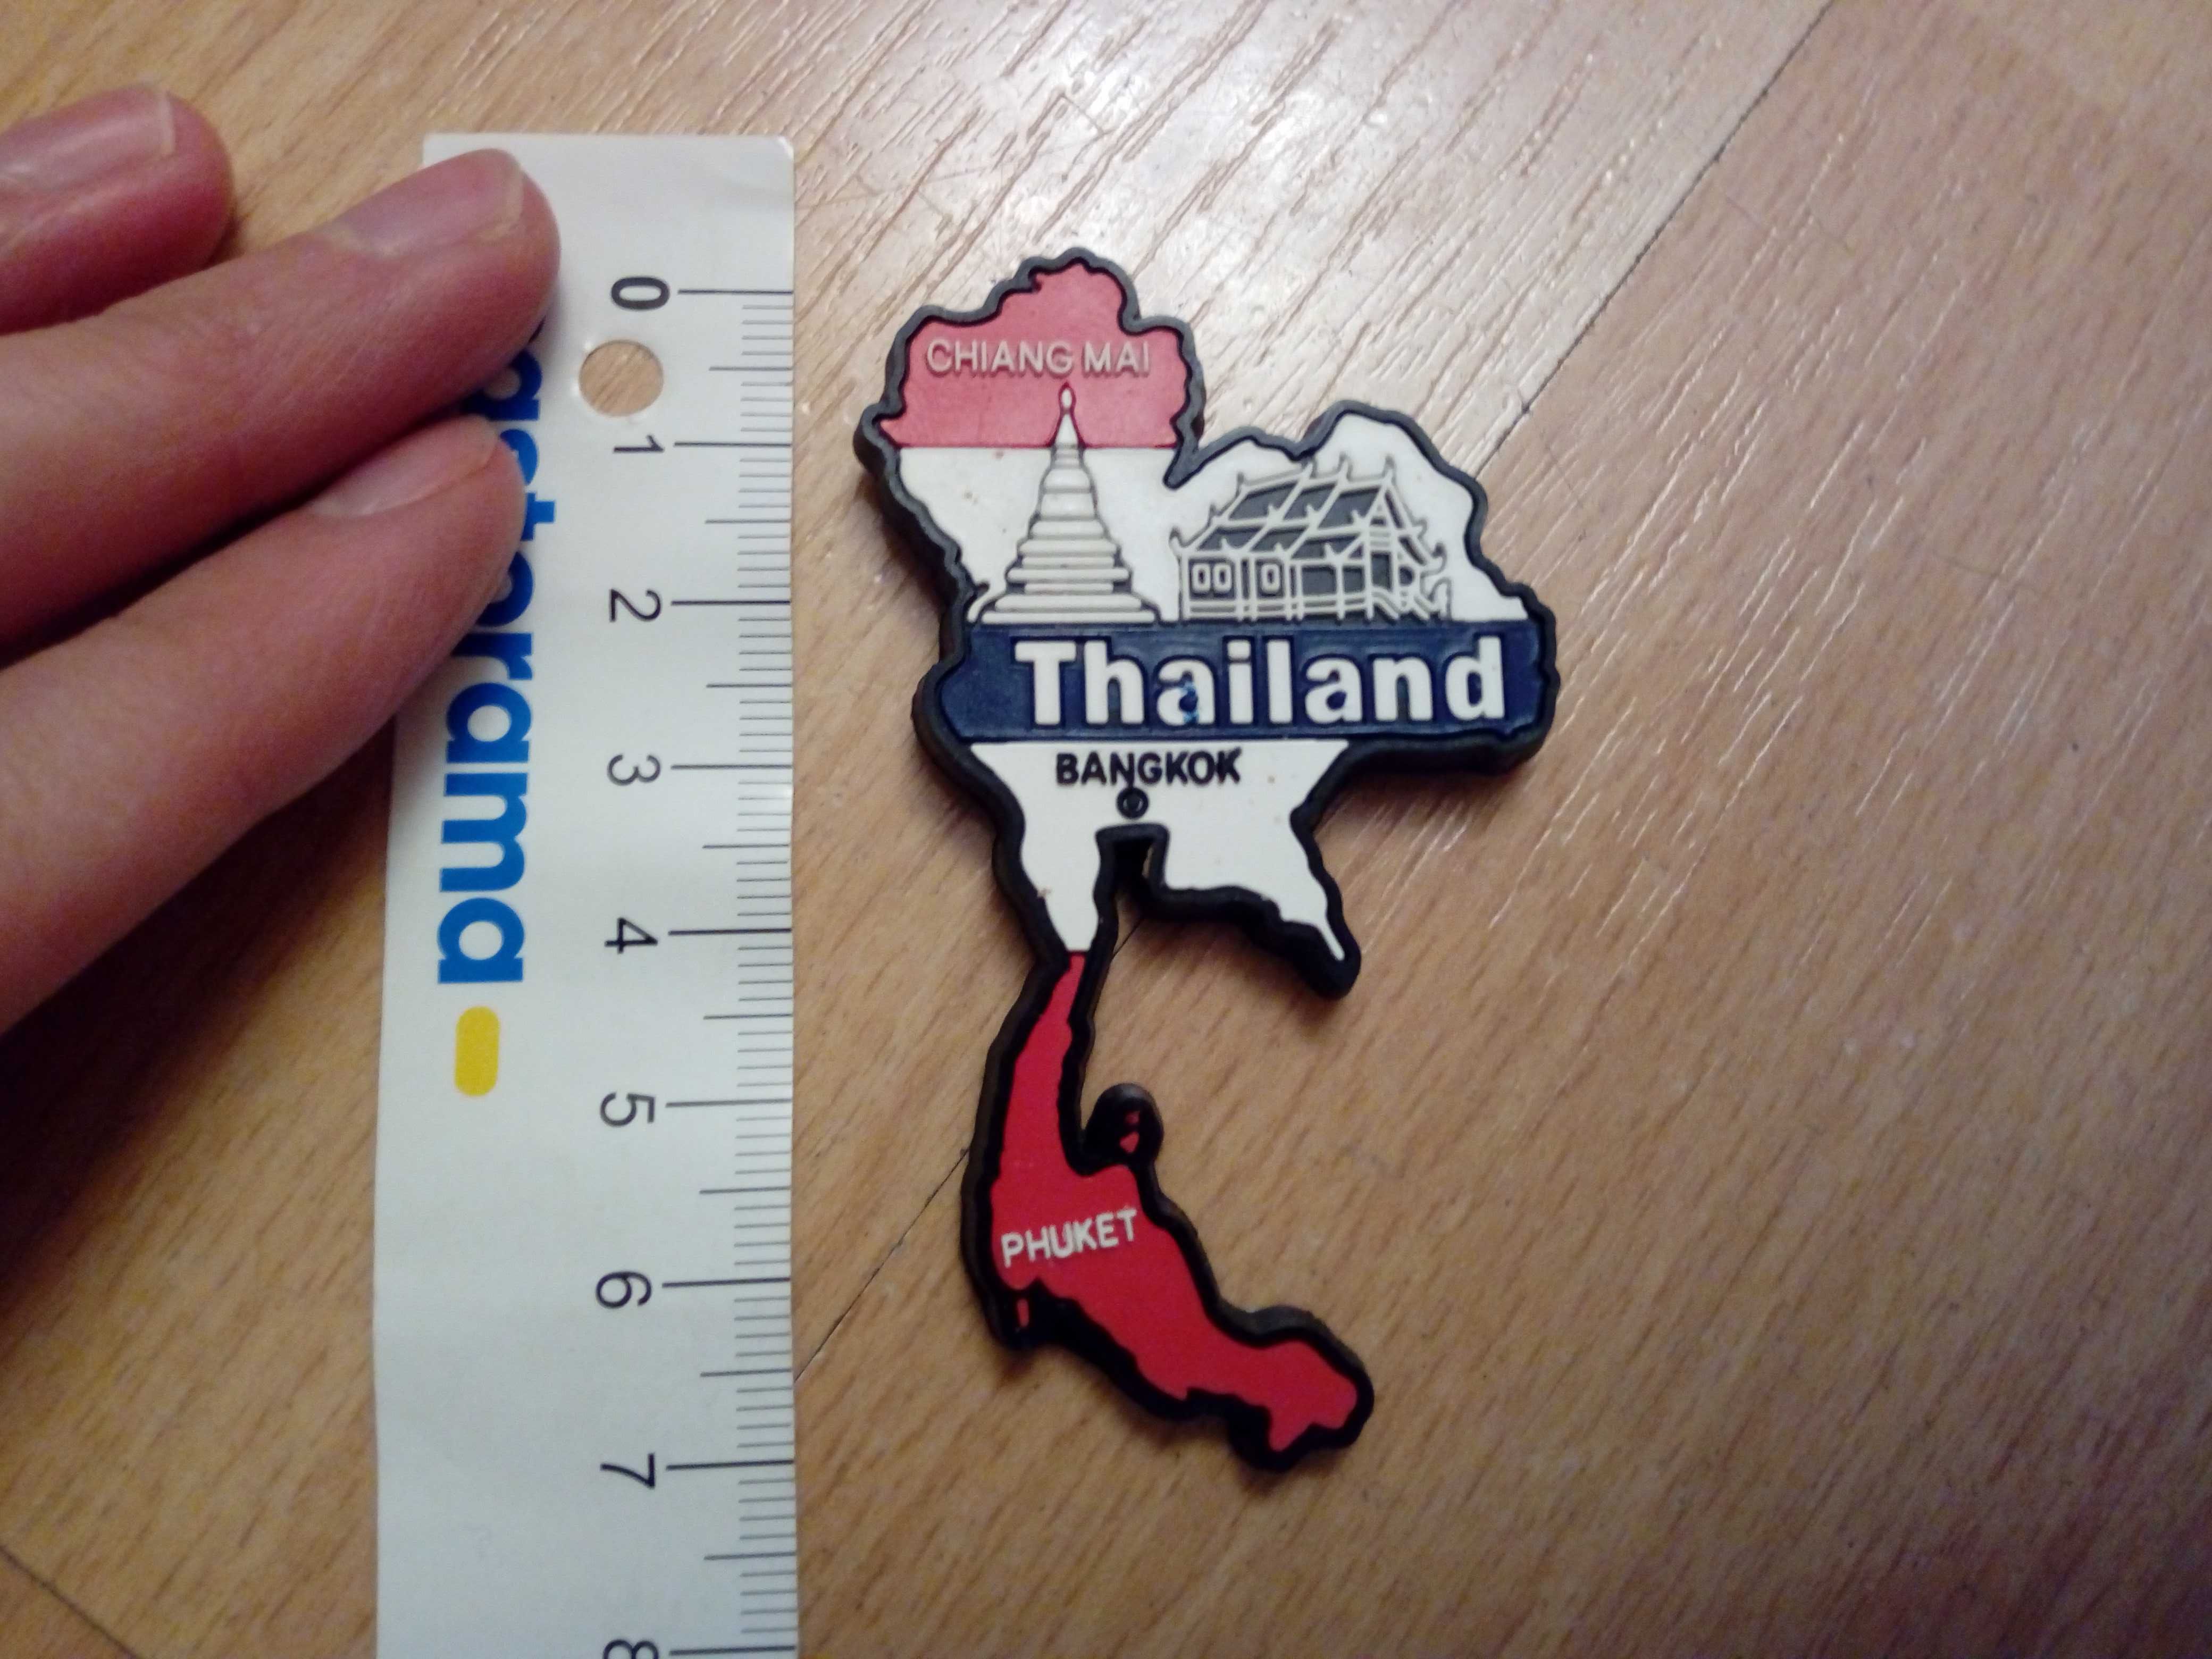 Thailand, Tajlandia magnes na tablicę, lub lodówkę